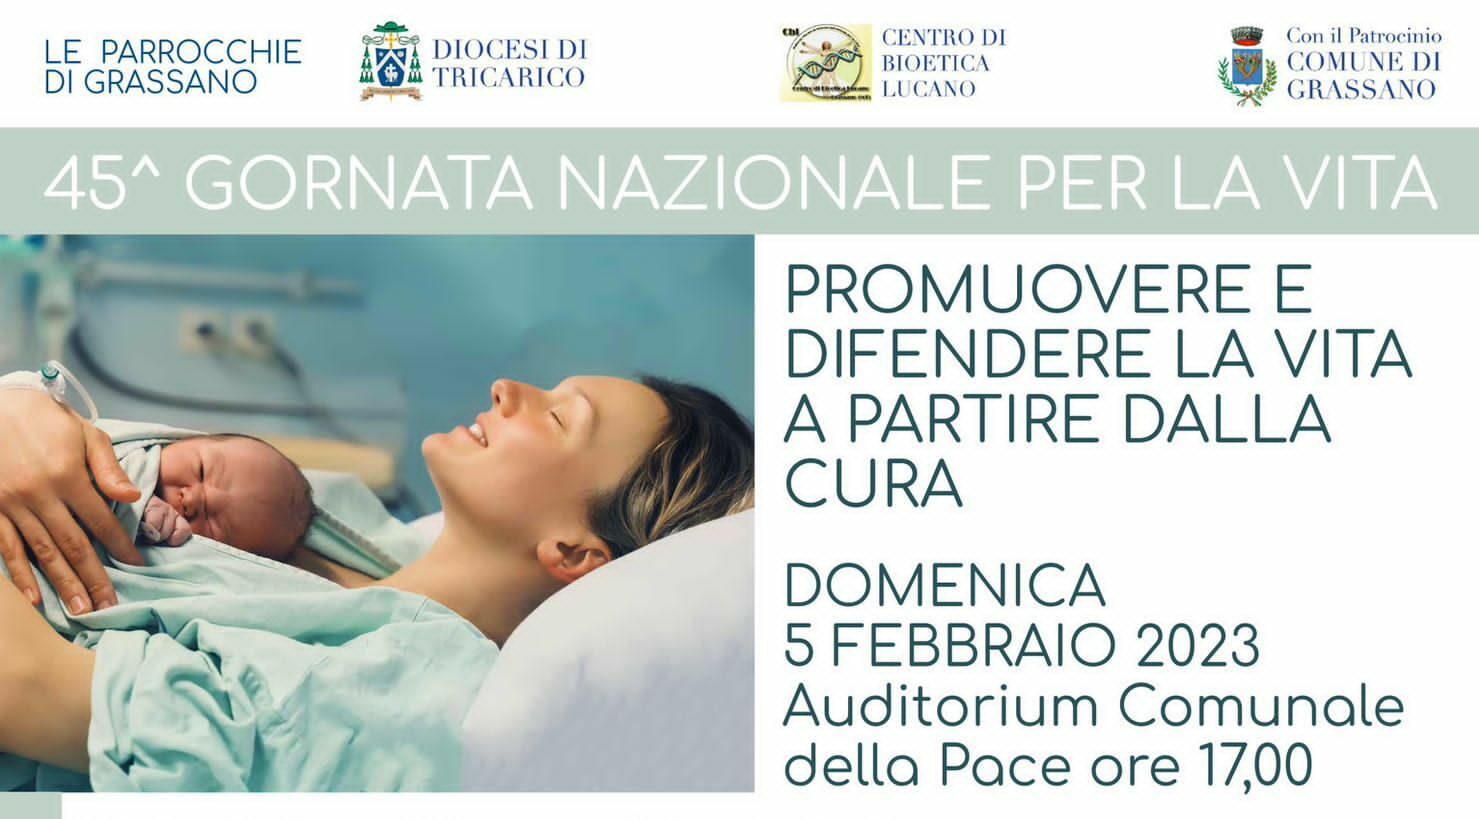 “Promuovere e difendere la vita partendo dalla cura”, domani tavola rotonda a Grassano promossa dalla Diocesi di Tricarico